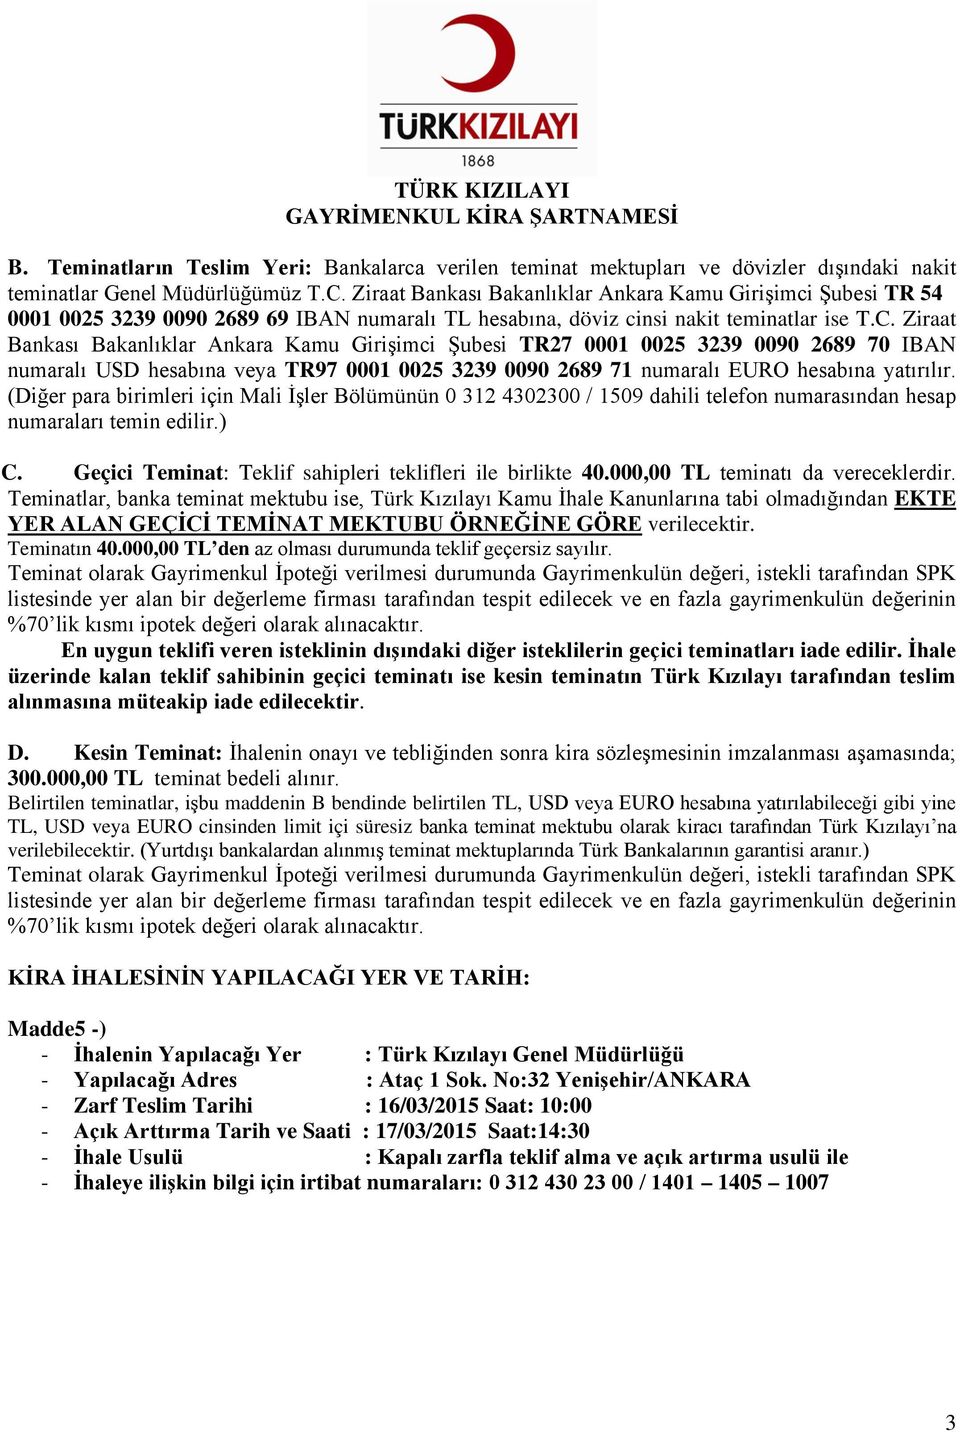 Ziraat Bankası Bakanlıklar Ankara Kamu Girişimci Şubesi TR27 0001 0025 3239 0090 2689 70 IBAN numaralı USD hesabına veya TR97 0001 0025 3239 0090 2689 71 numaralı EURO hesabına yatırılır.